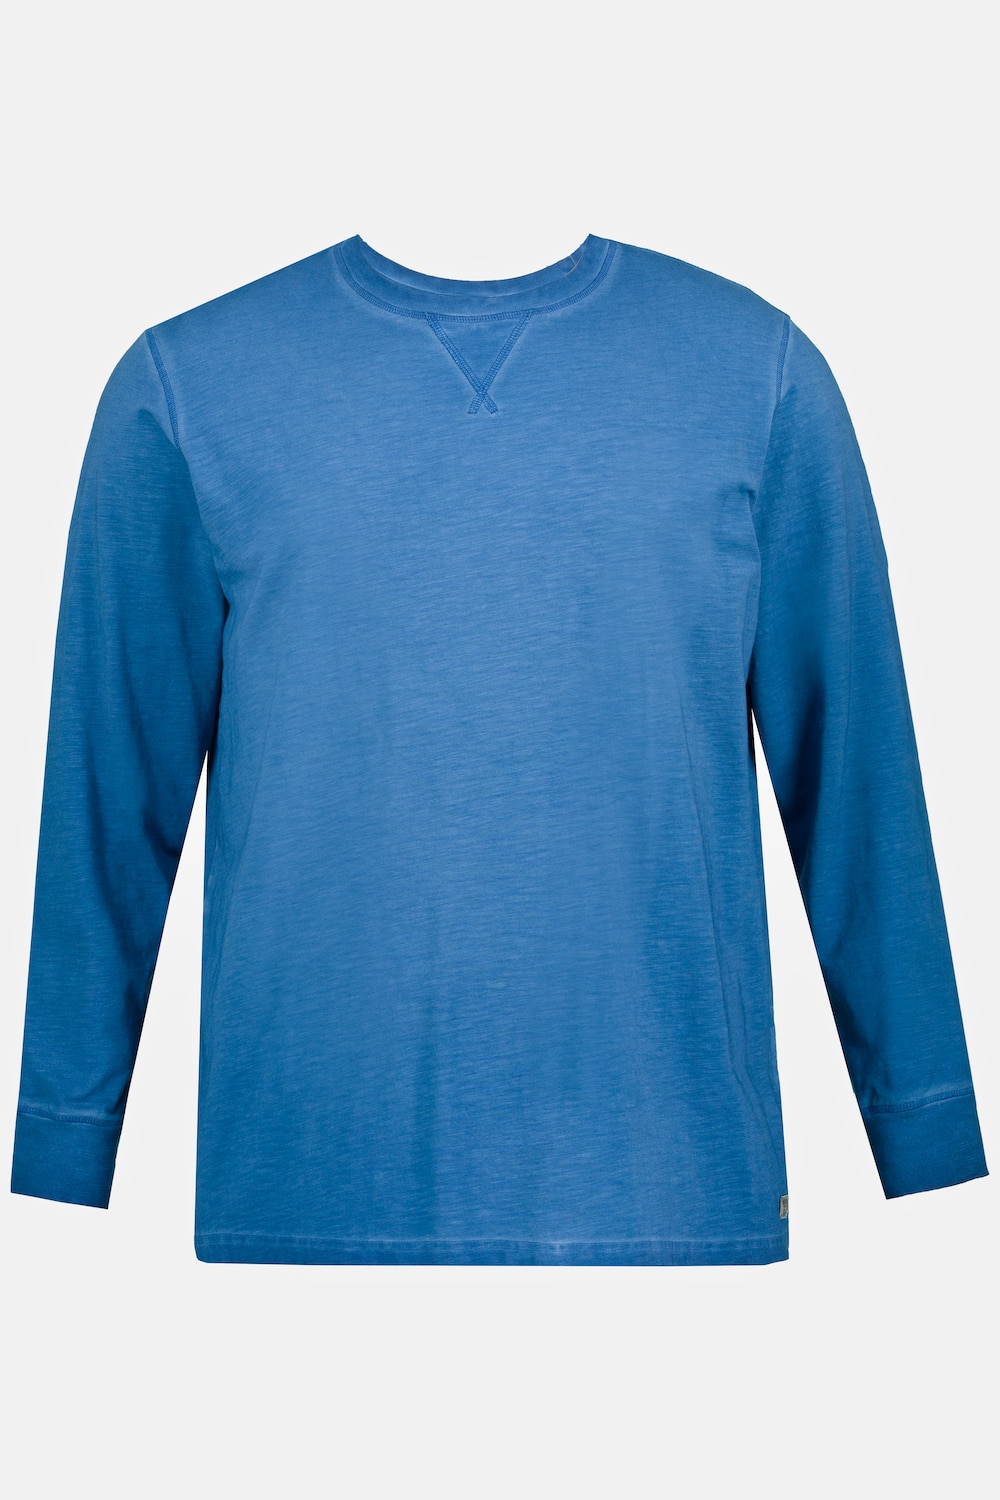 Langarmshirt, Große Größen, Herren, blau, Größe: 4XL, Baumwolle, JP1880